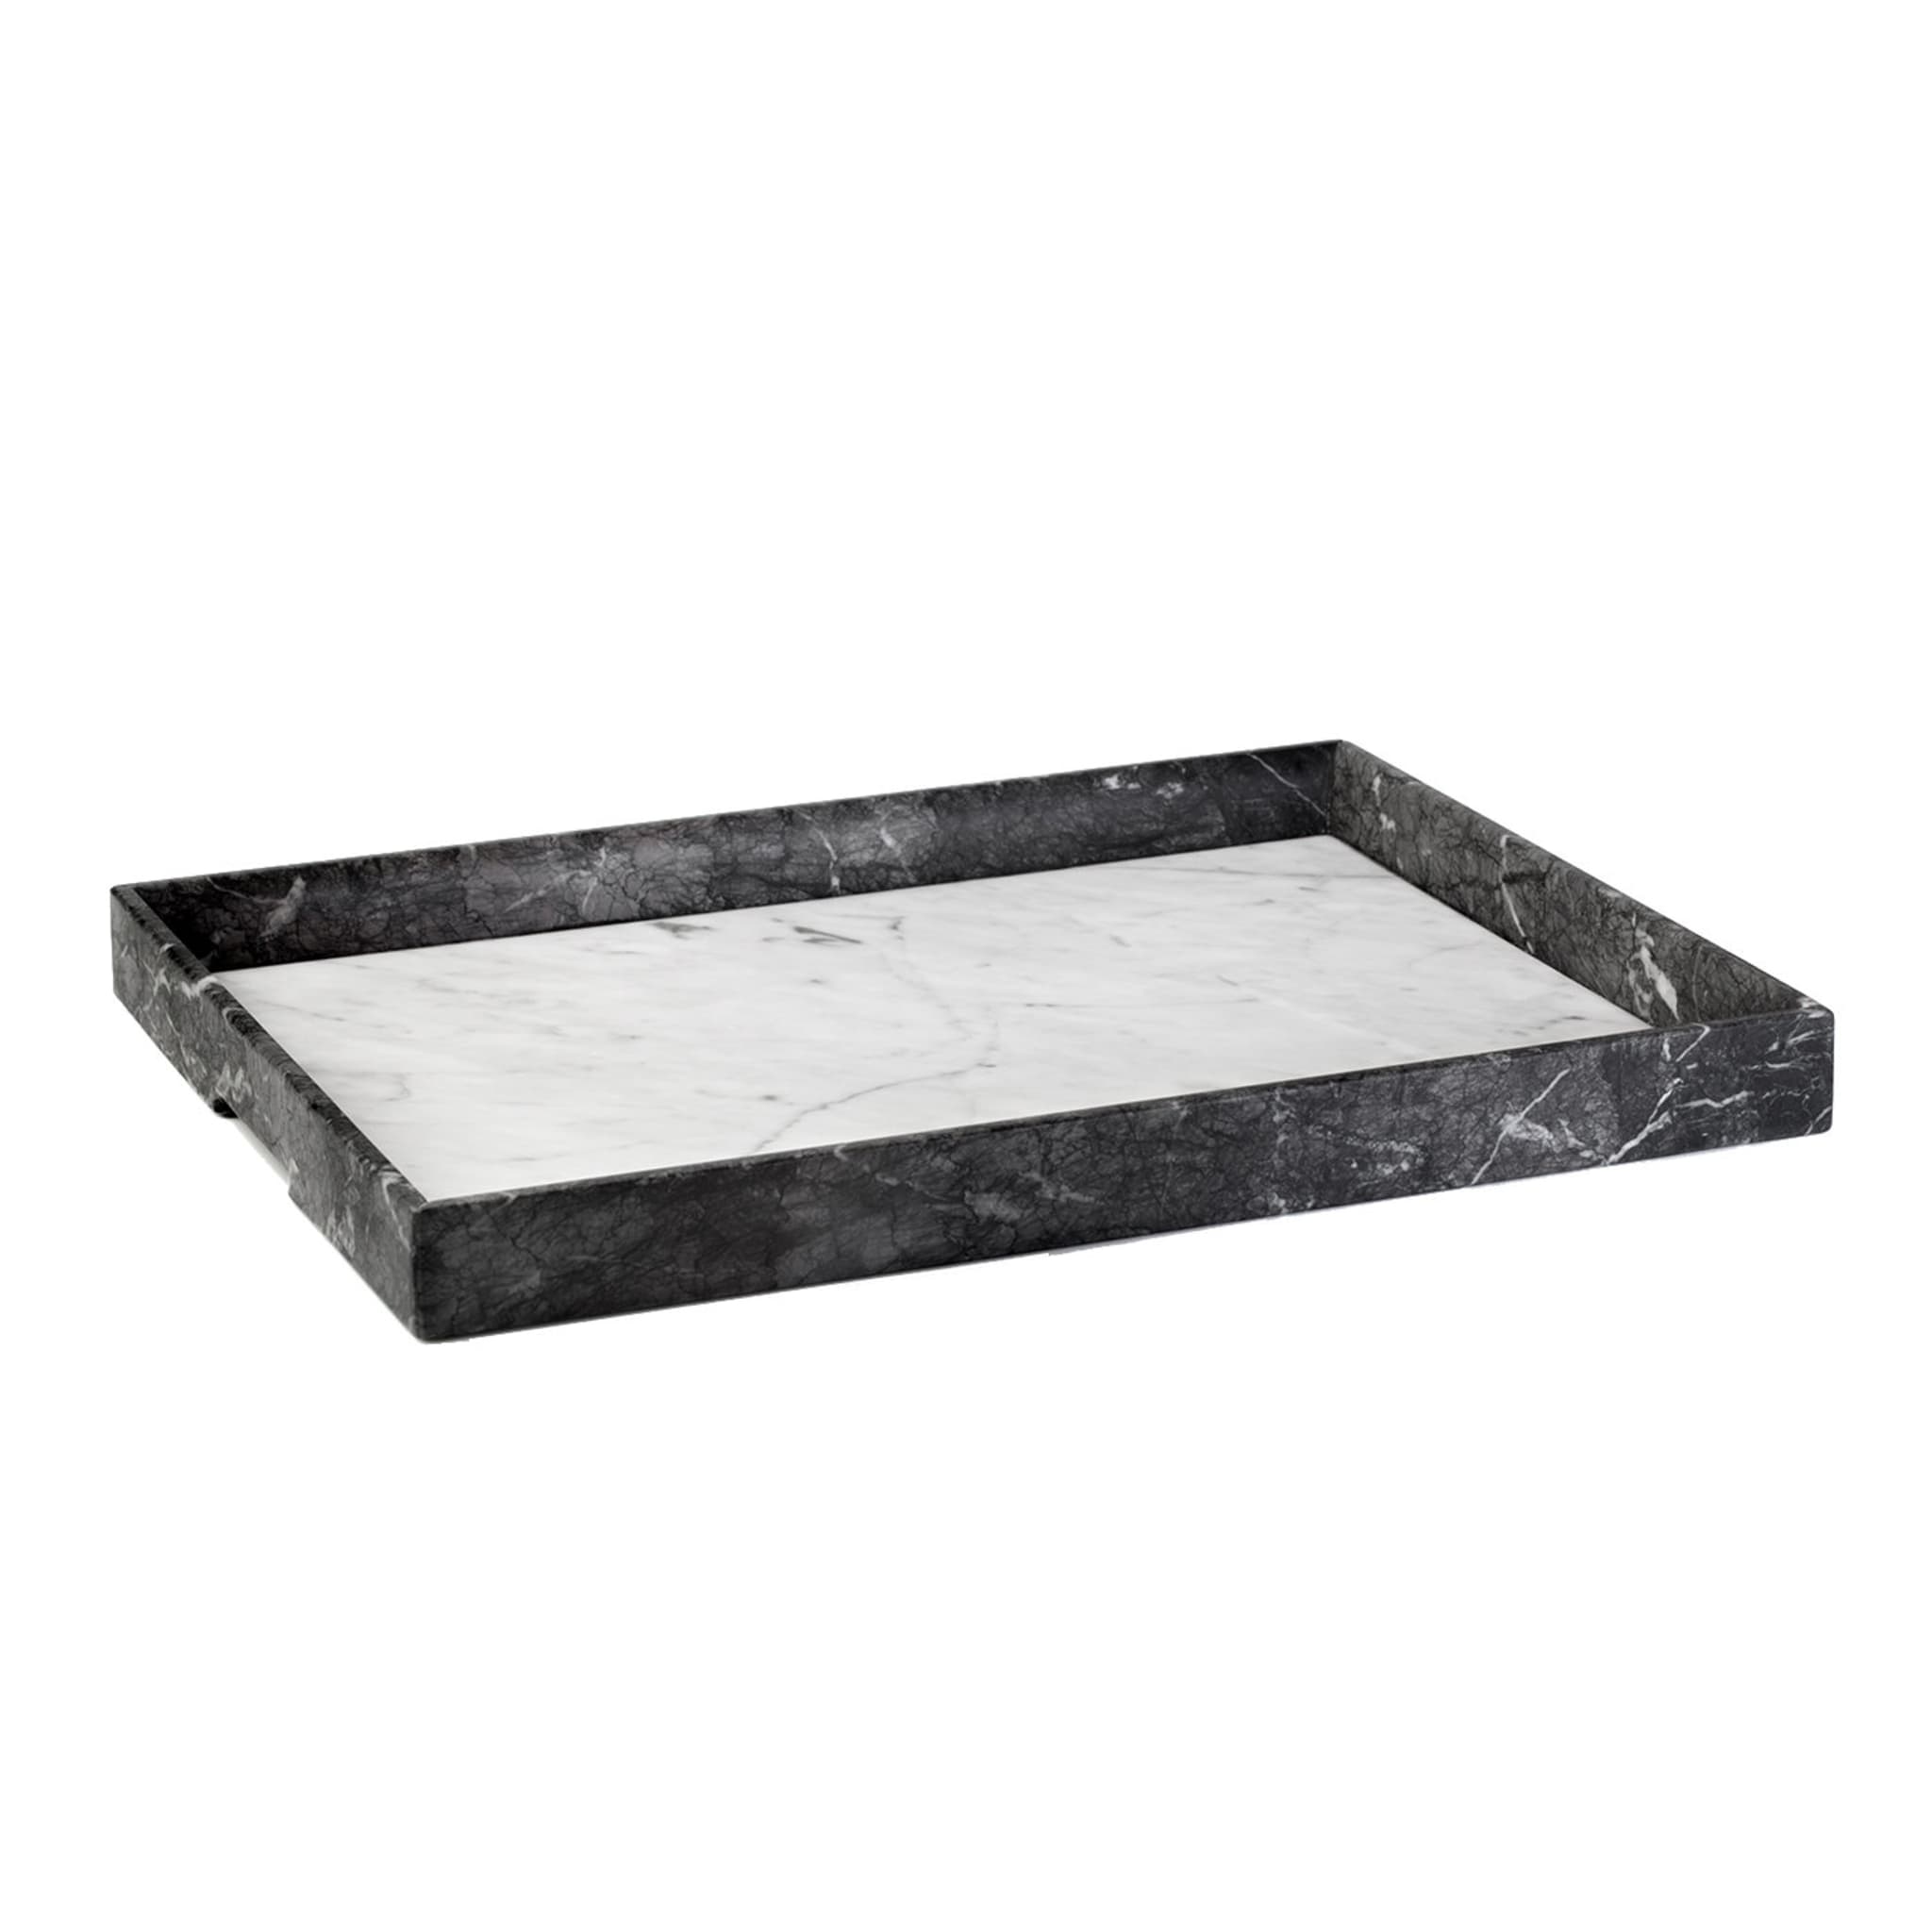 Convivio Maxi Solid Tray in Grey Carnico and White Carrara Marbles - Main view